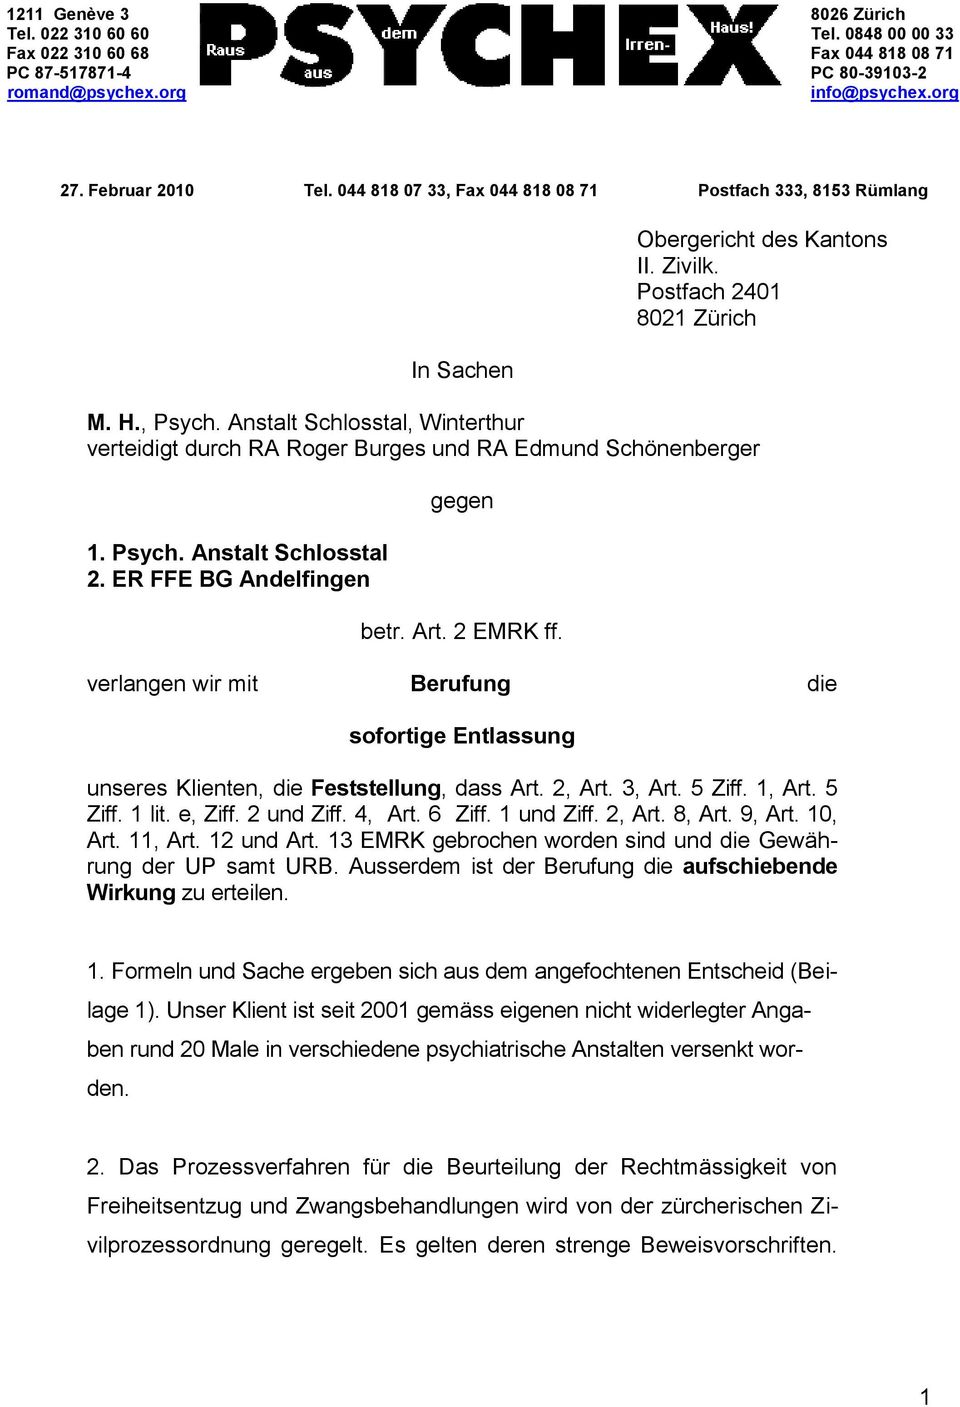 Anstalt Schlosstal, Winterthur verteidigt durch RA Roger Burges und RA Edmund Schönenberger 1. Psych. Anstalt Schlosstal 2. ER FFE BG Andelfingen gegen betr. Art. 2 EMRK ff.